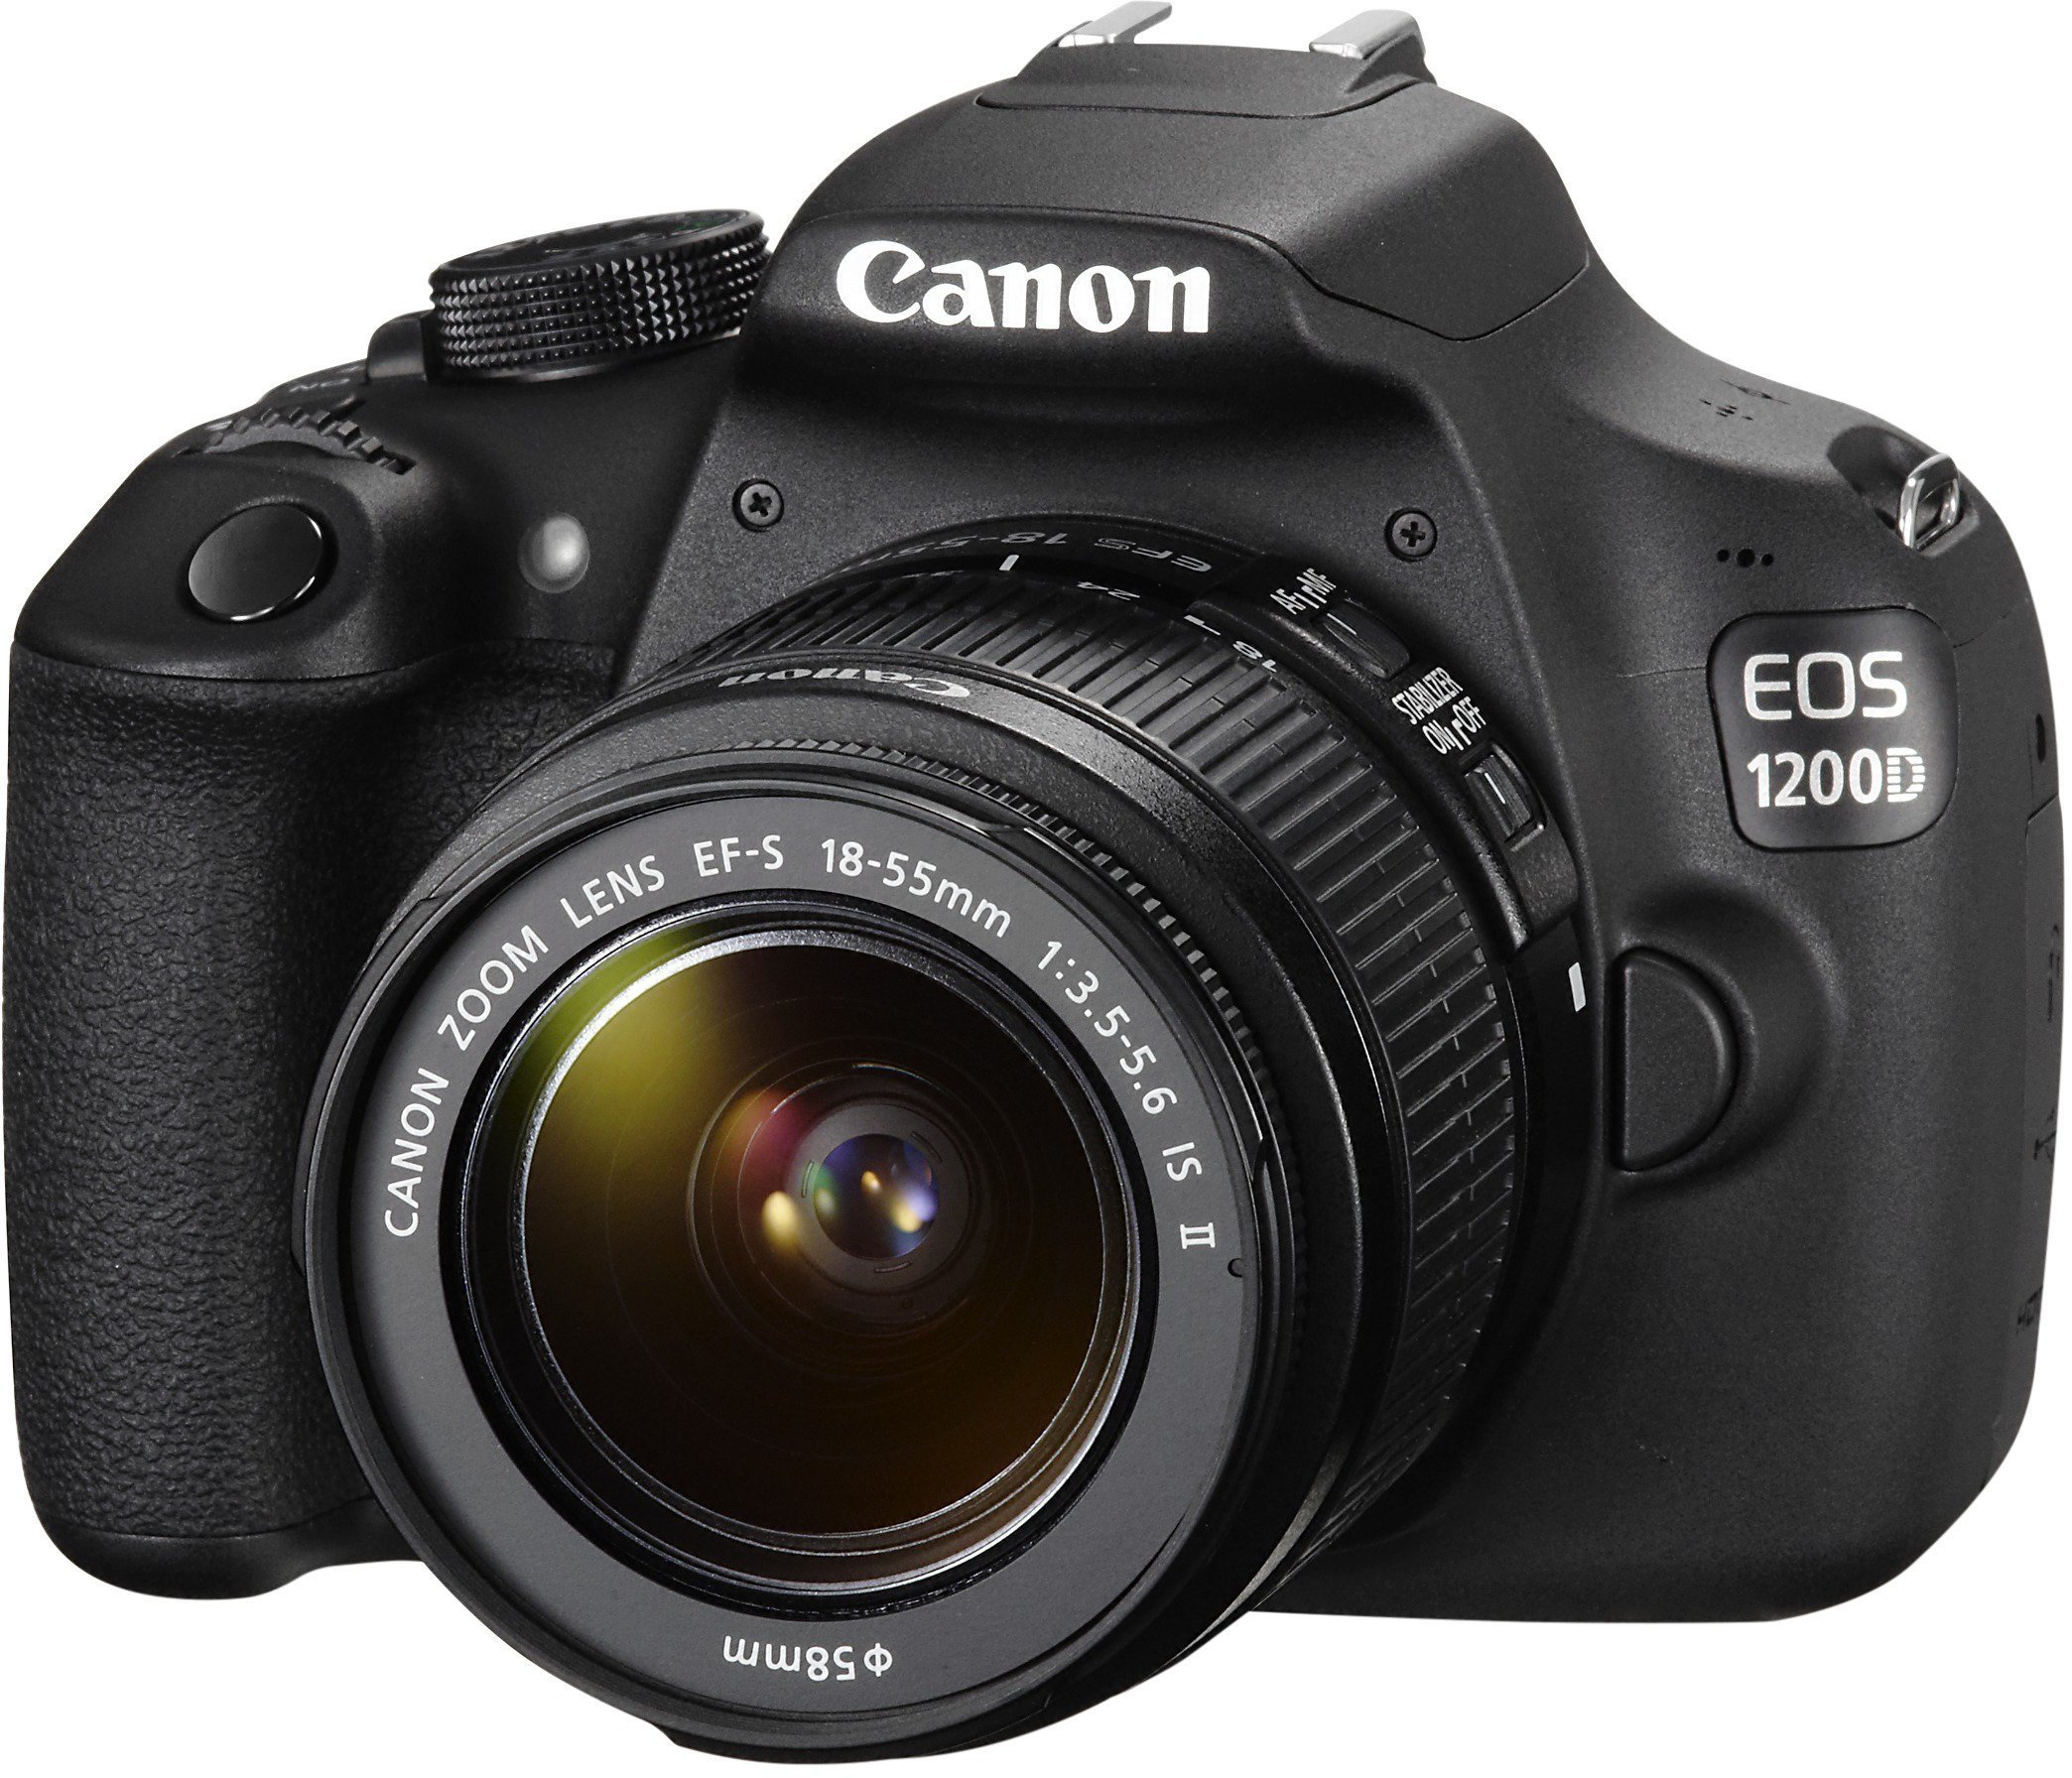 Canon Eos 1200D Expert